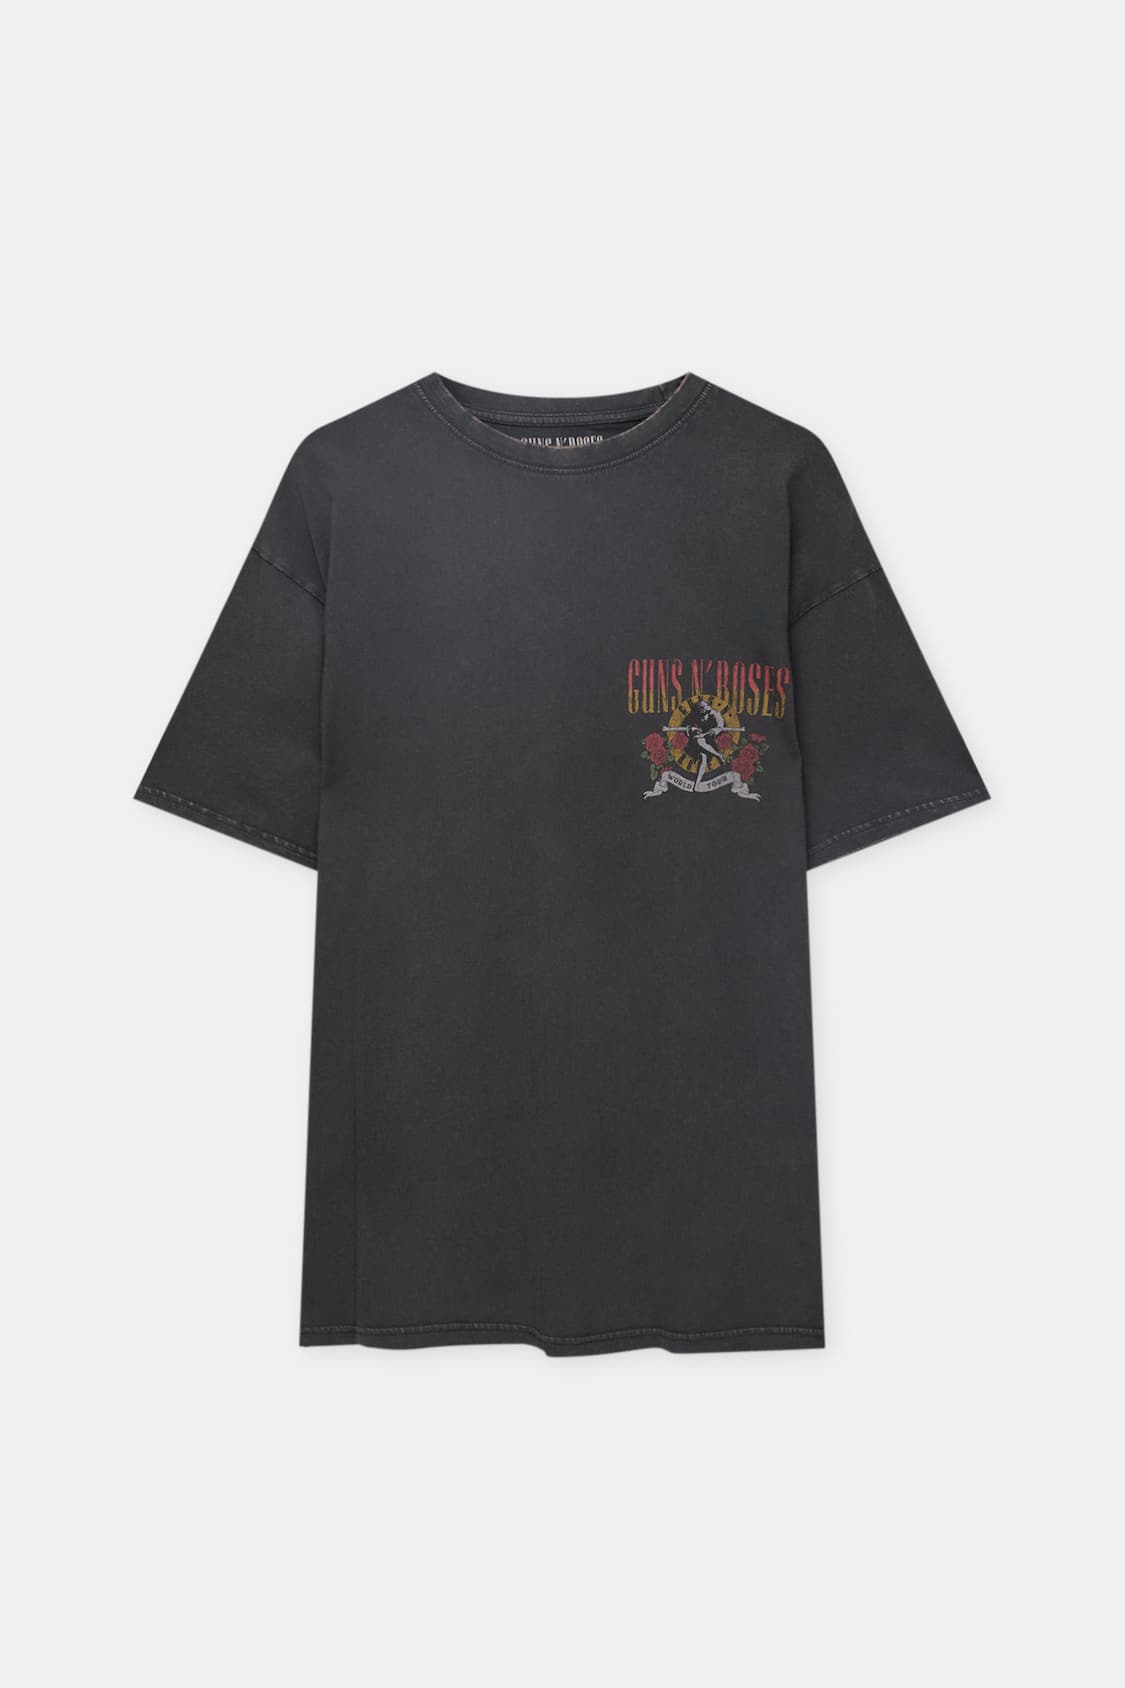 Guns N 'Roses World T-shirt - pull&bear